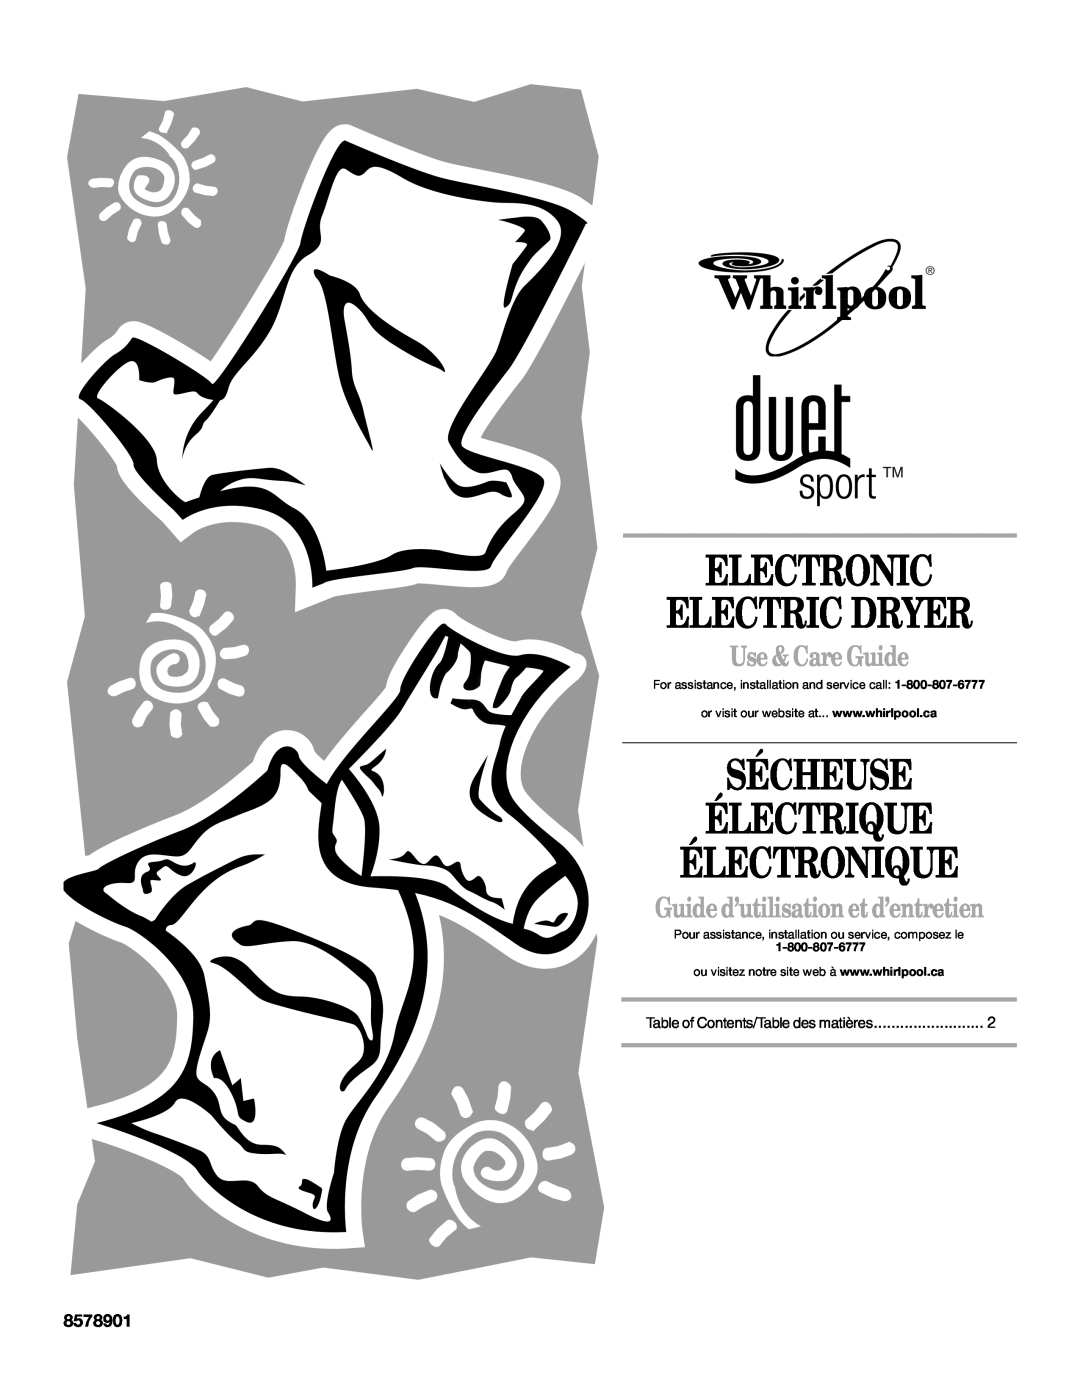 Whirlpool 8578901 manual Electronic Electric Dryer, Sécheuse Électrique Électronique, Use & Care Guide 